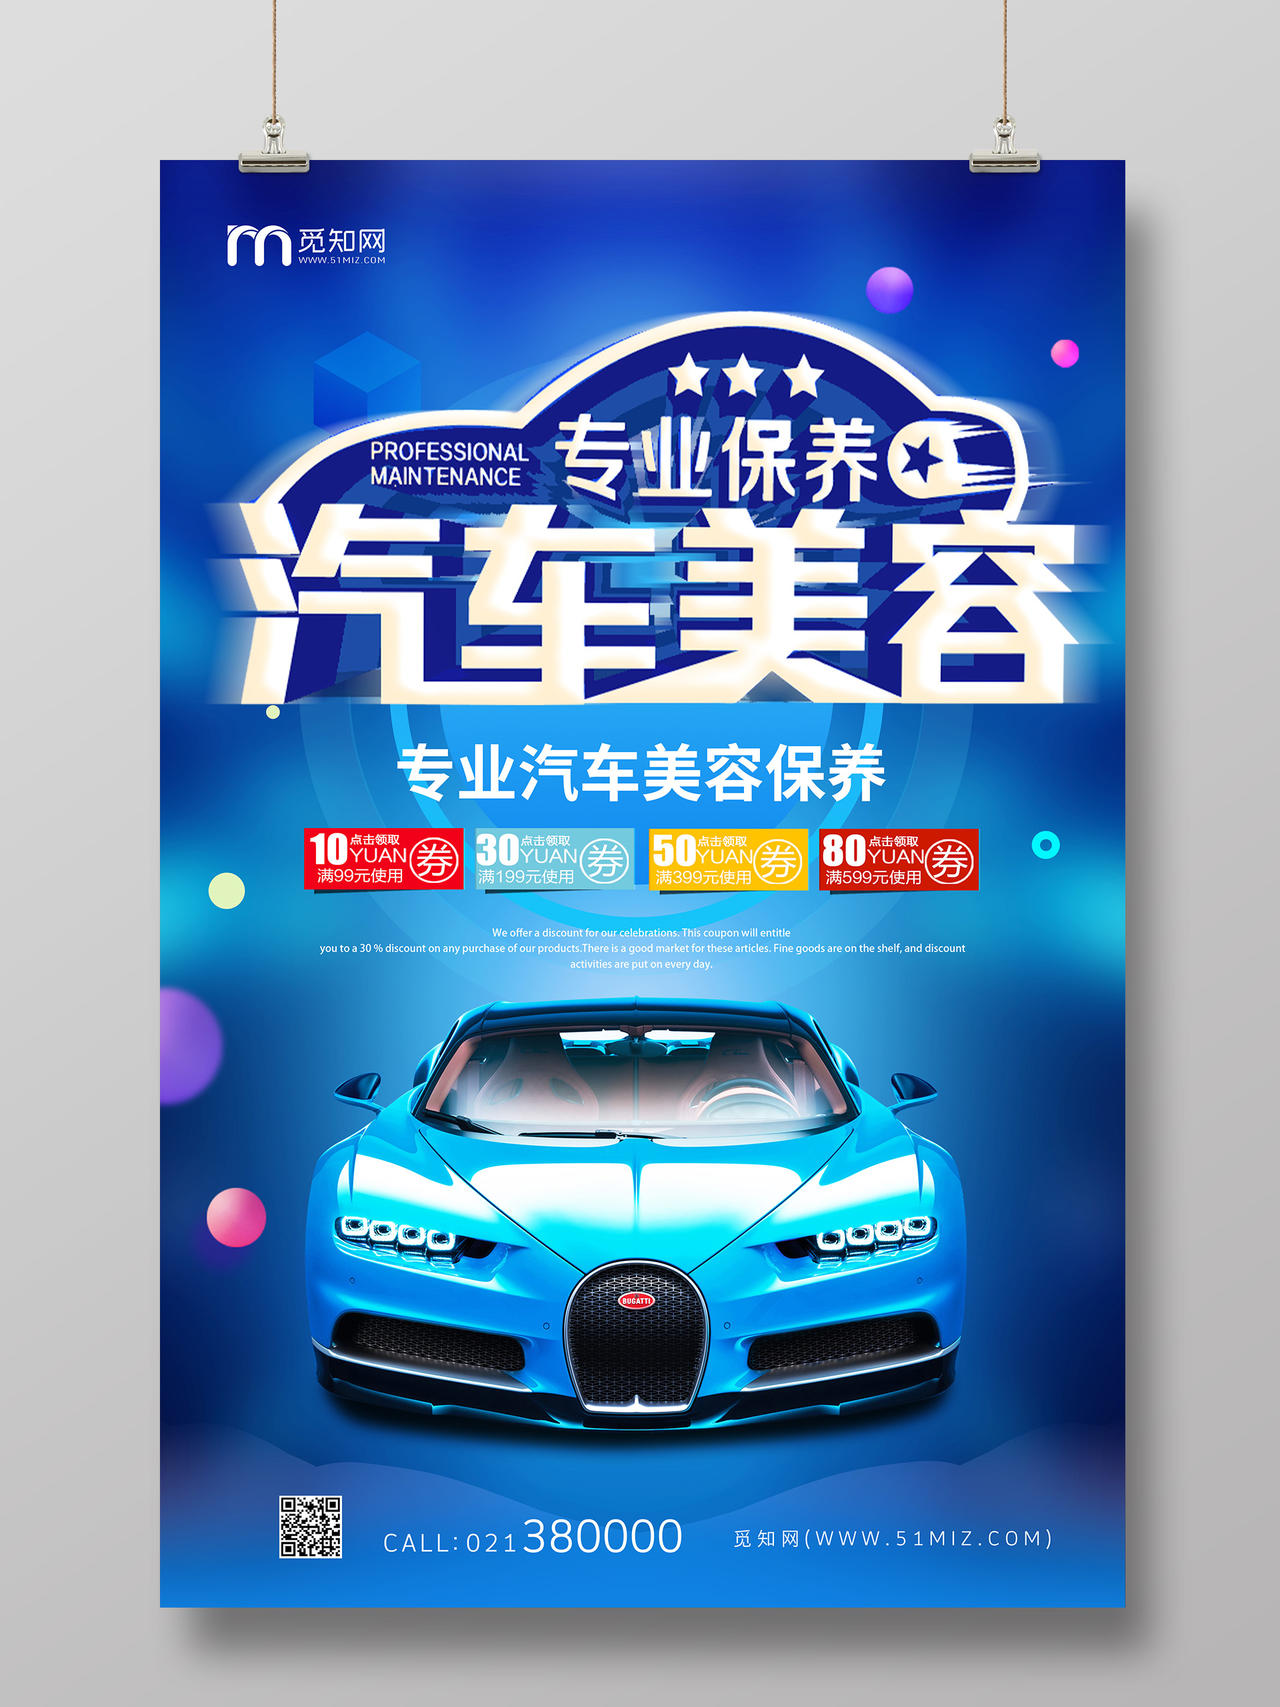 蓝色科技汽车美容专业保养汽车豪车海报宣传